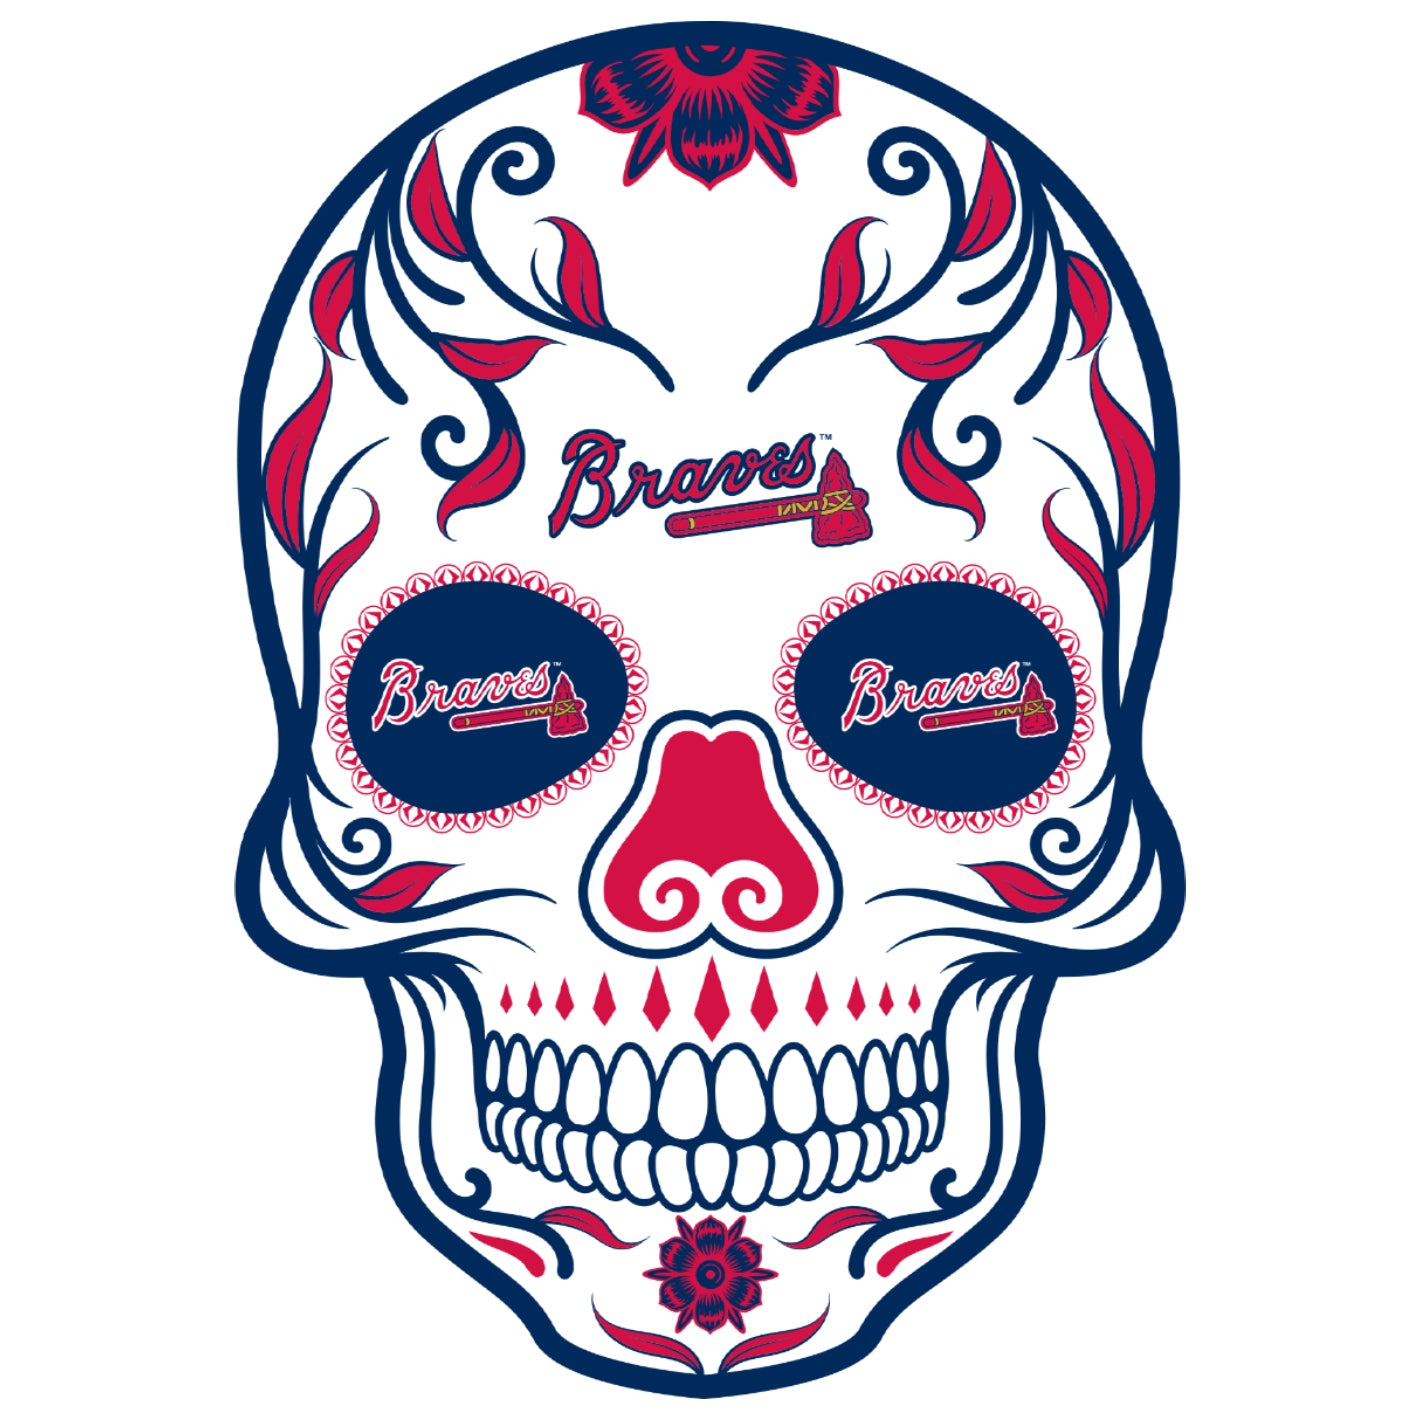 Atlanta Braves Sticker by MLB